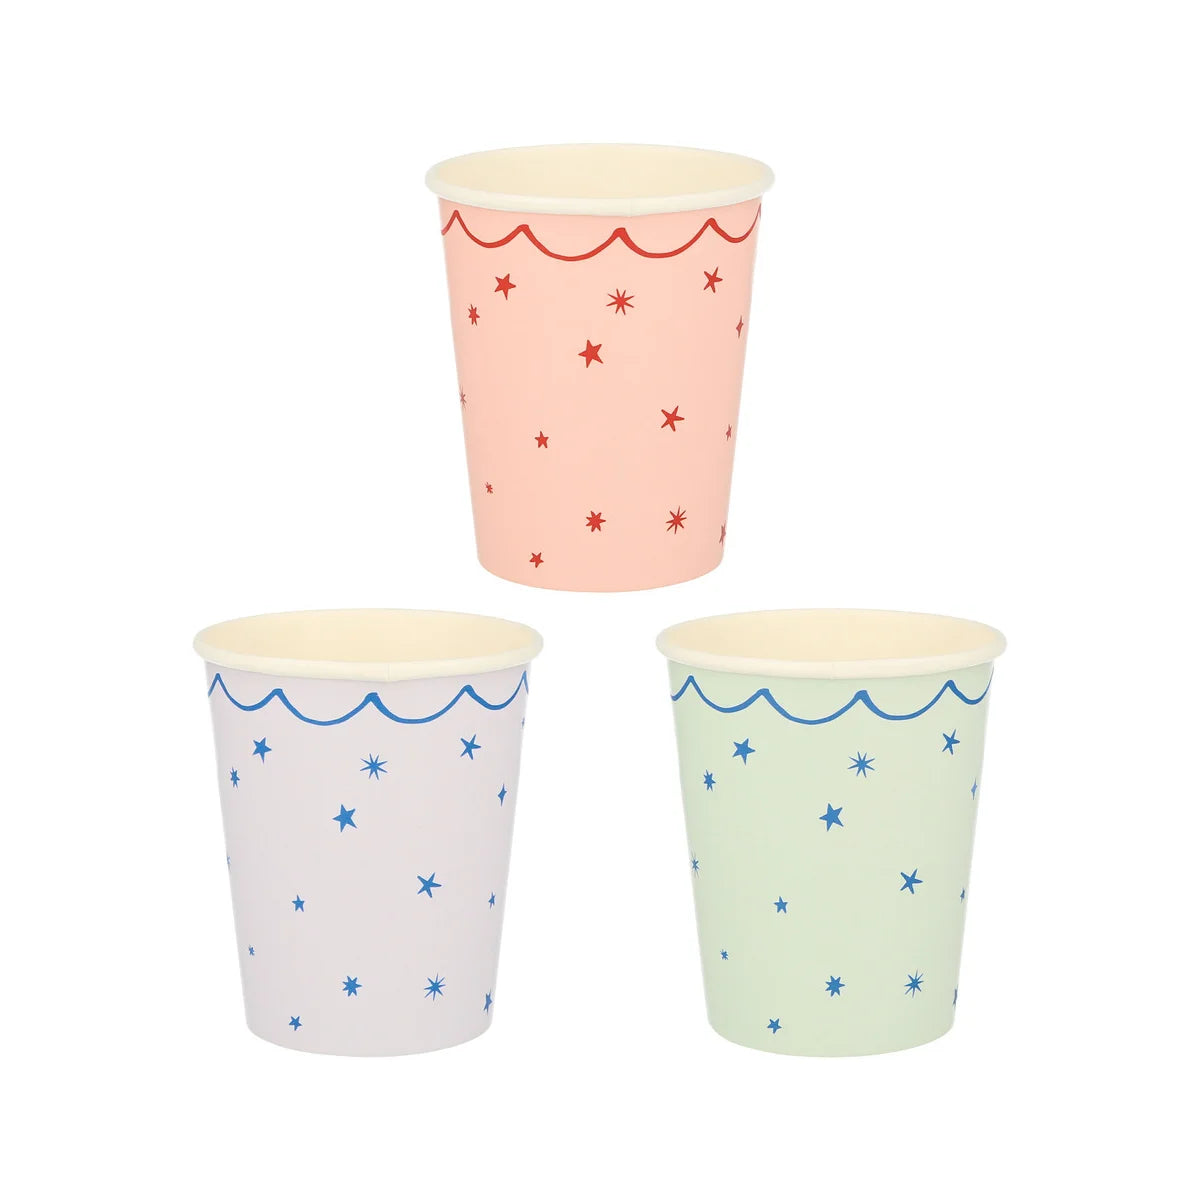 Star Pattern cups sold at ALittleConfetti, Meri Meri